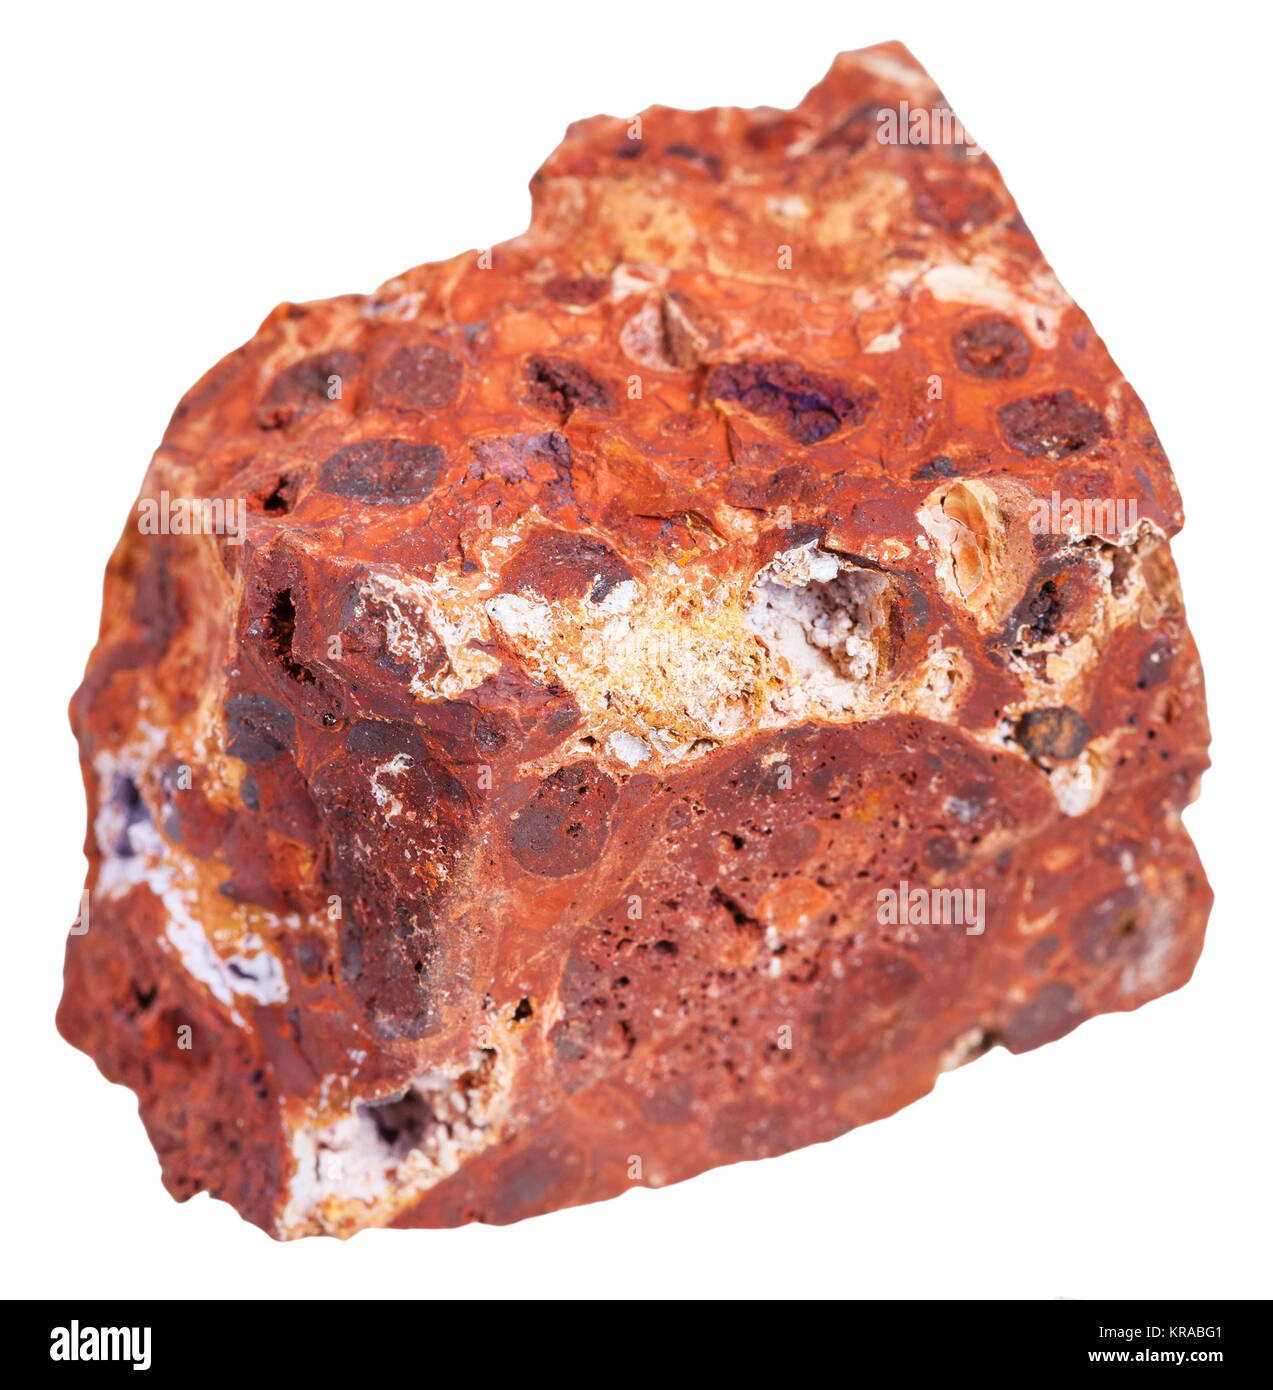 bauxite (aluminium ore) stone isolated on white Stock Photo